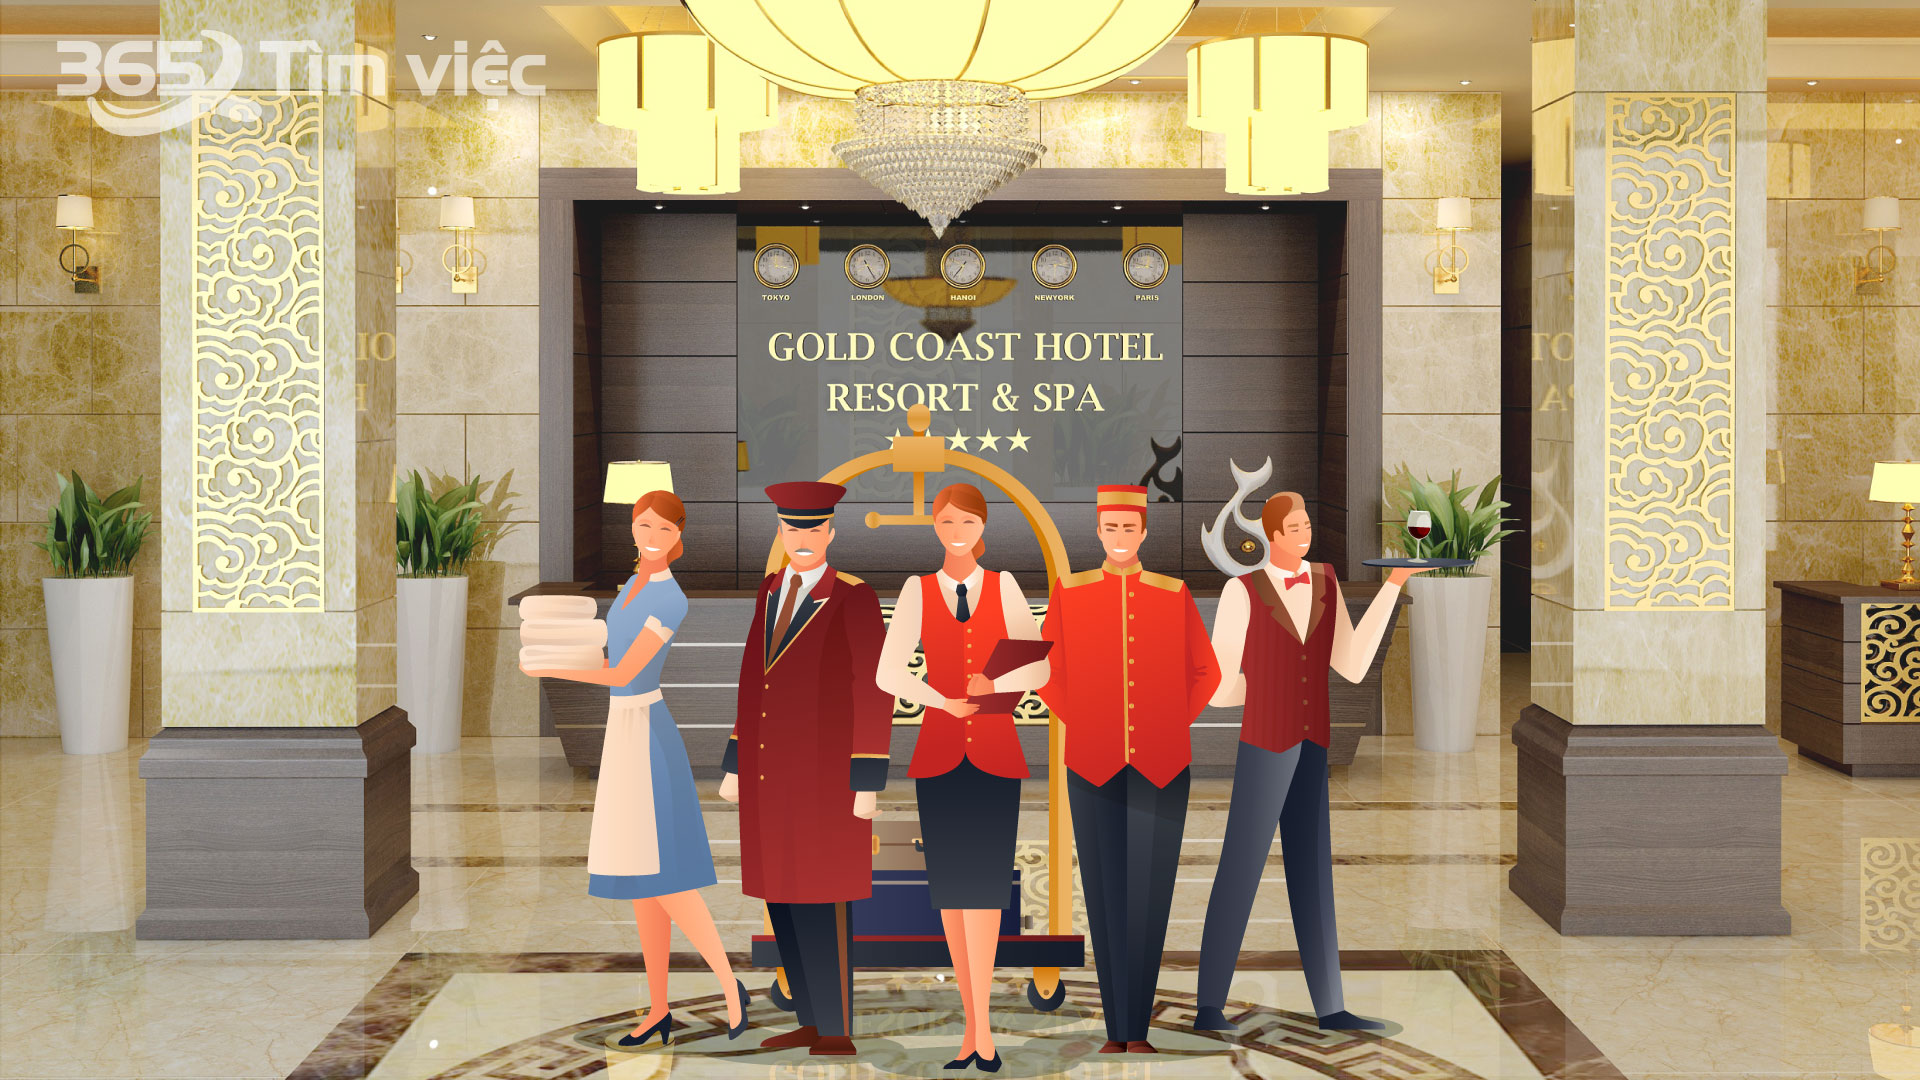 Nhân viên khách sạn – một trong những vị trí hot cùng tham gia phát triển với ngành du lịch